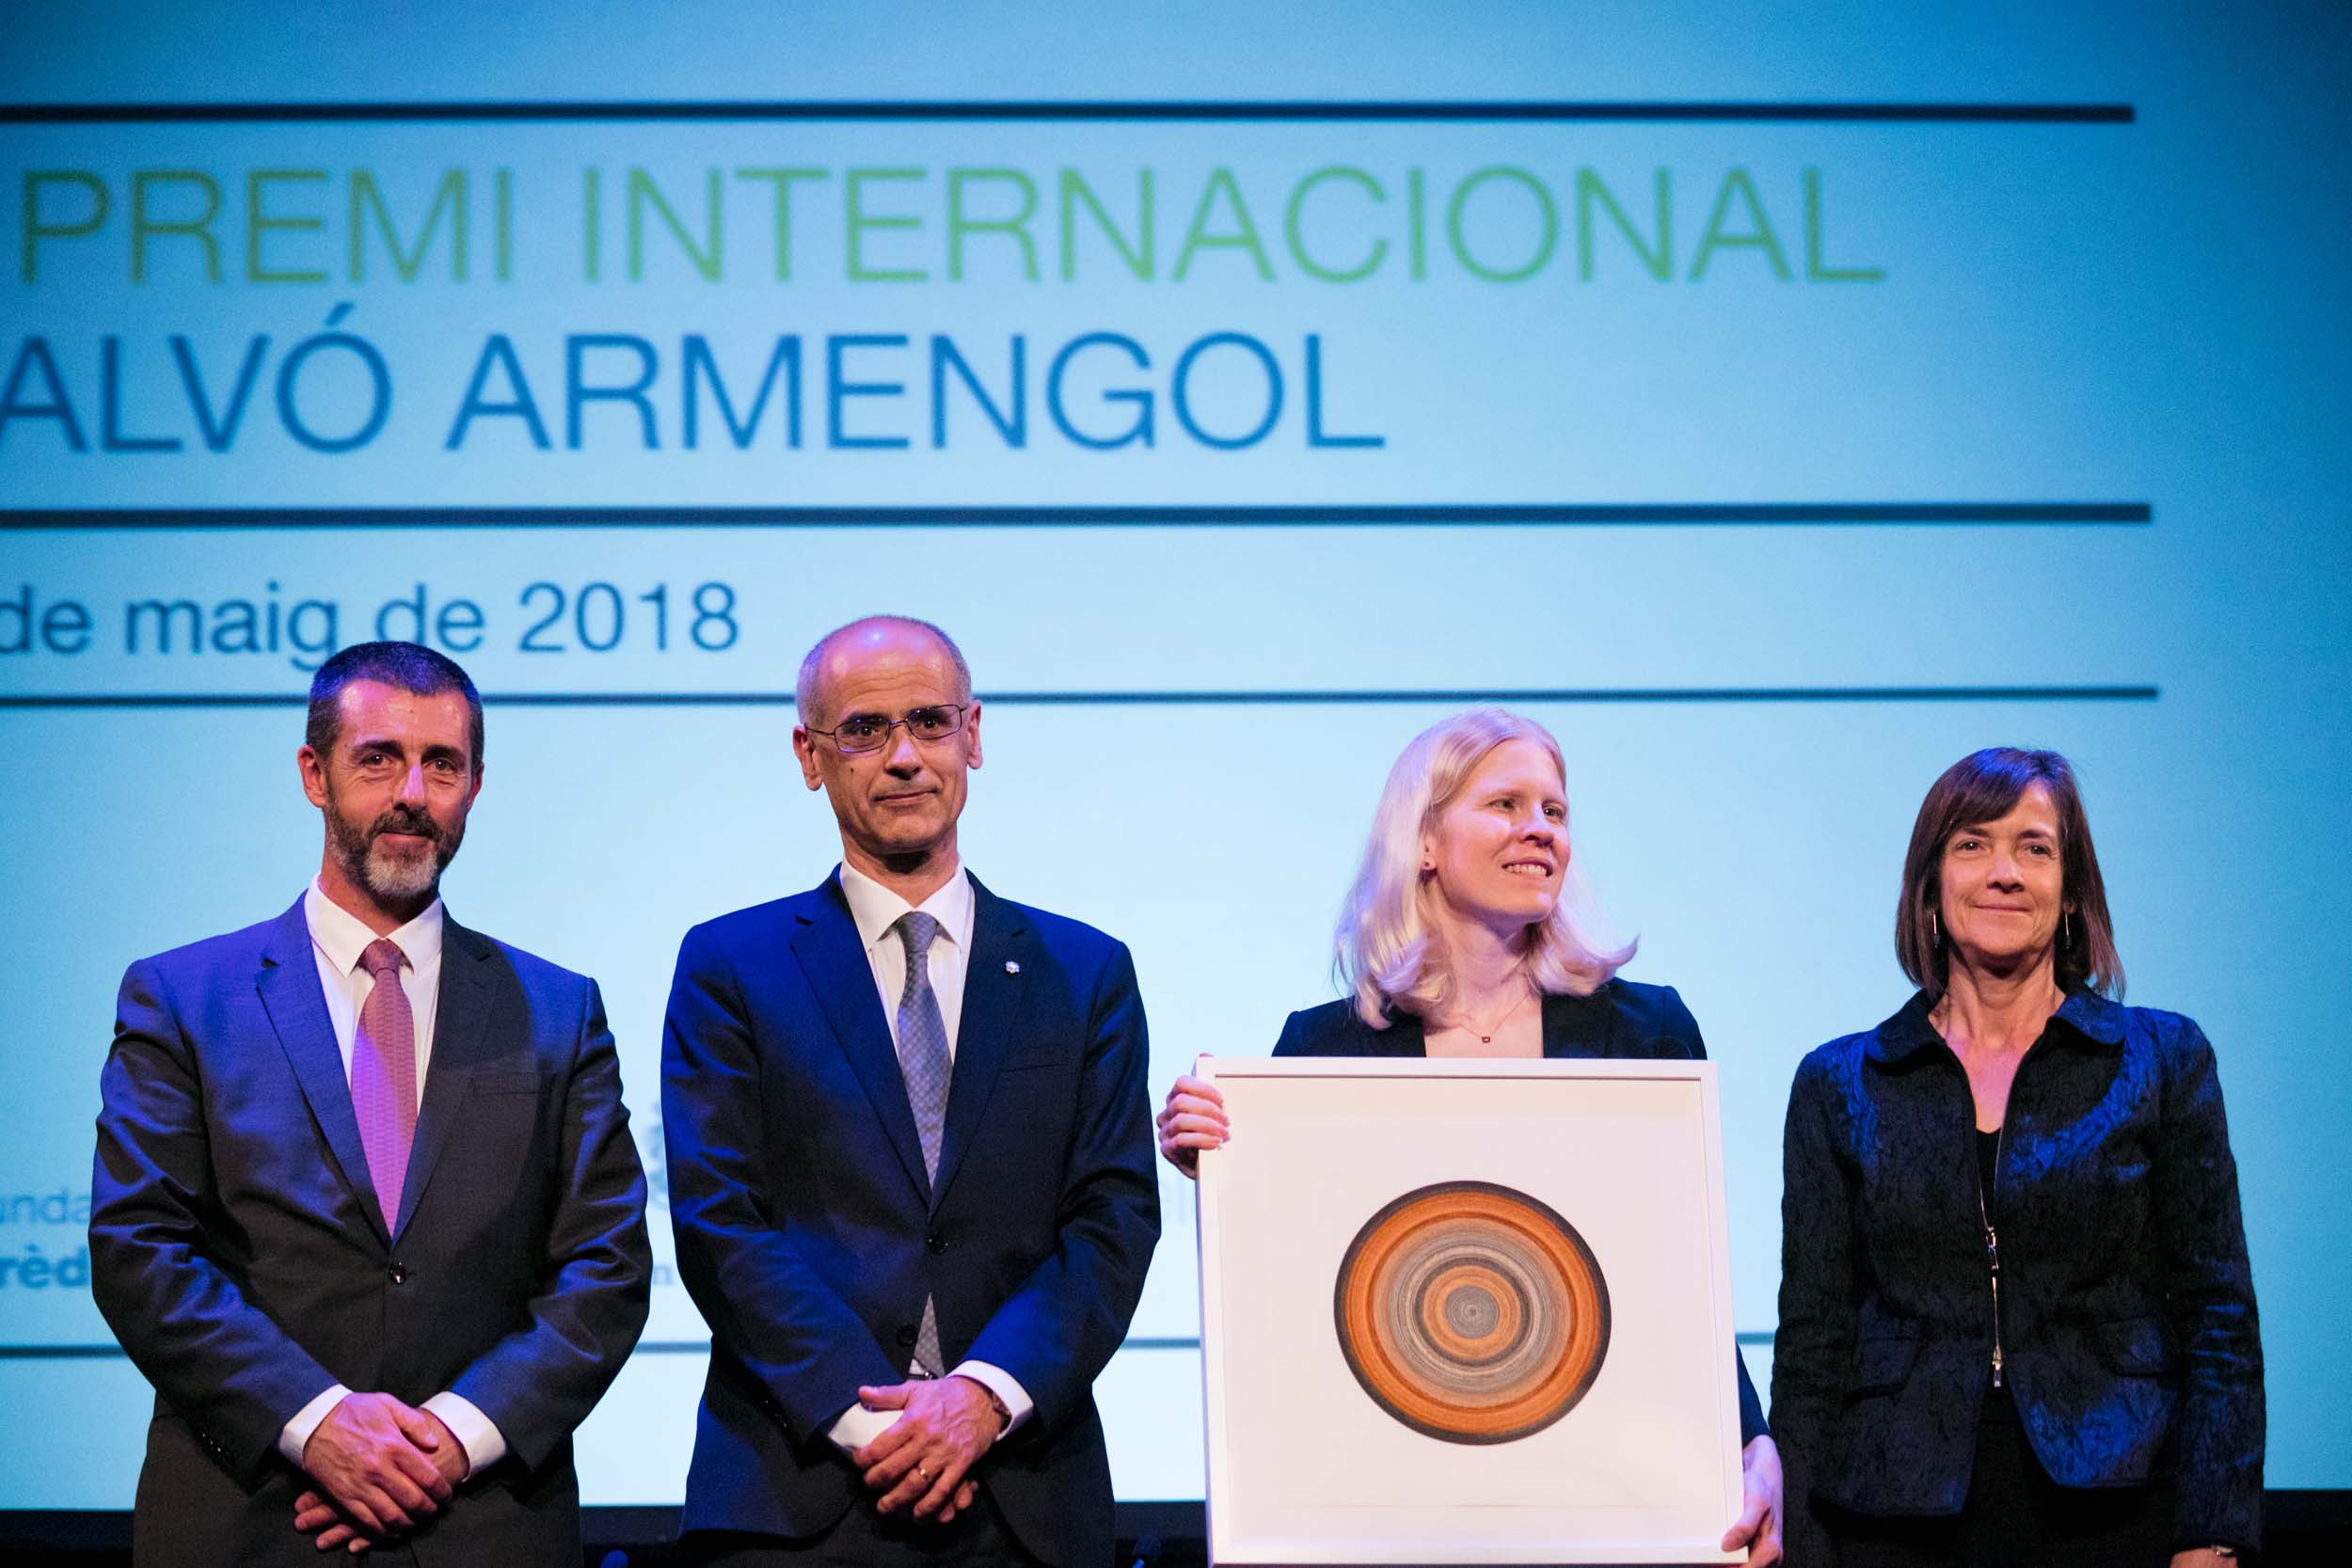 La professora Melissa Dell recull el V Premi Internacional Calvó Armengol